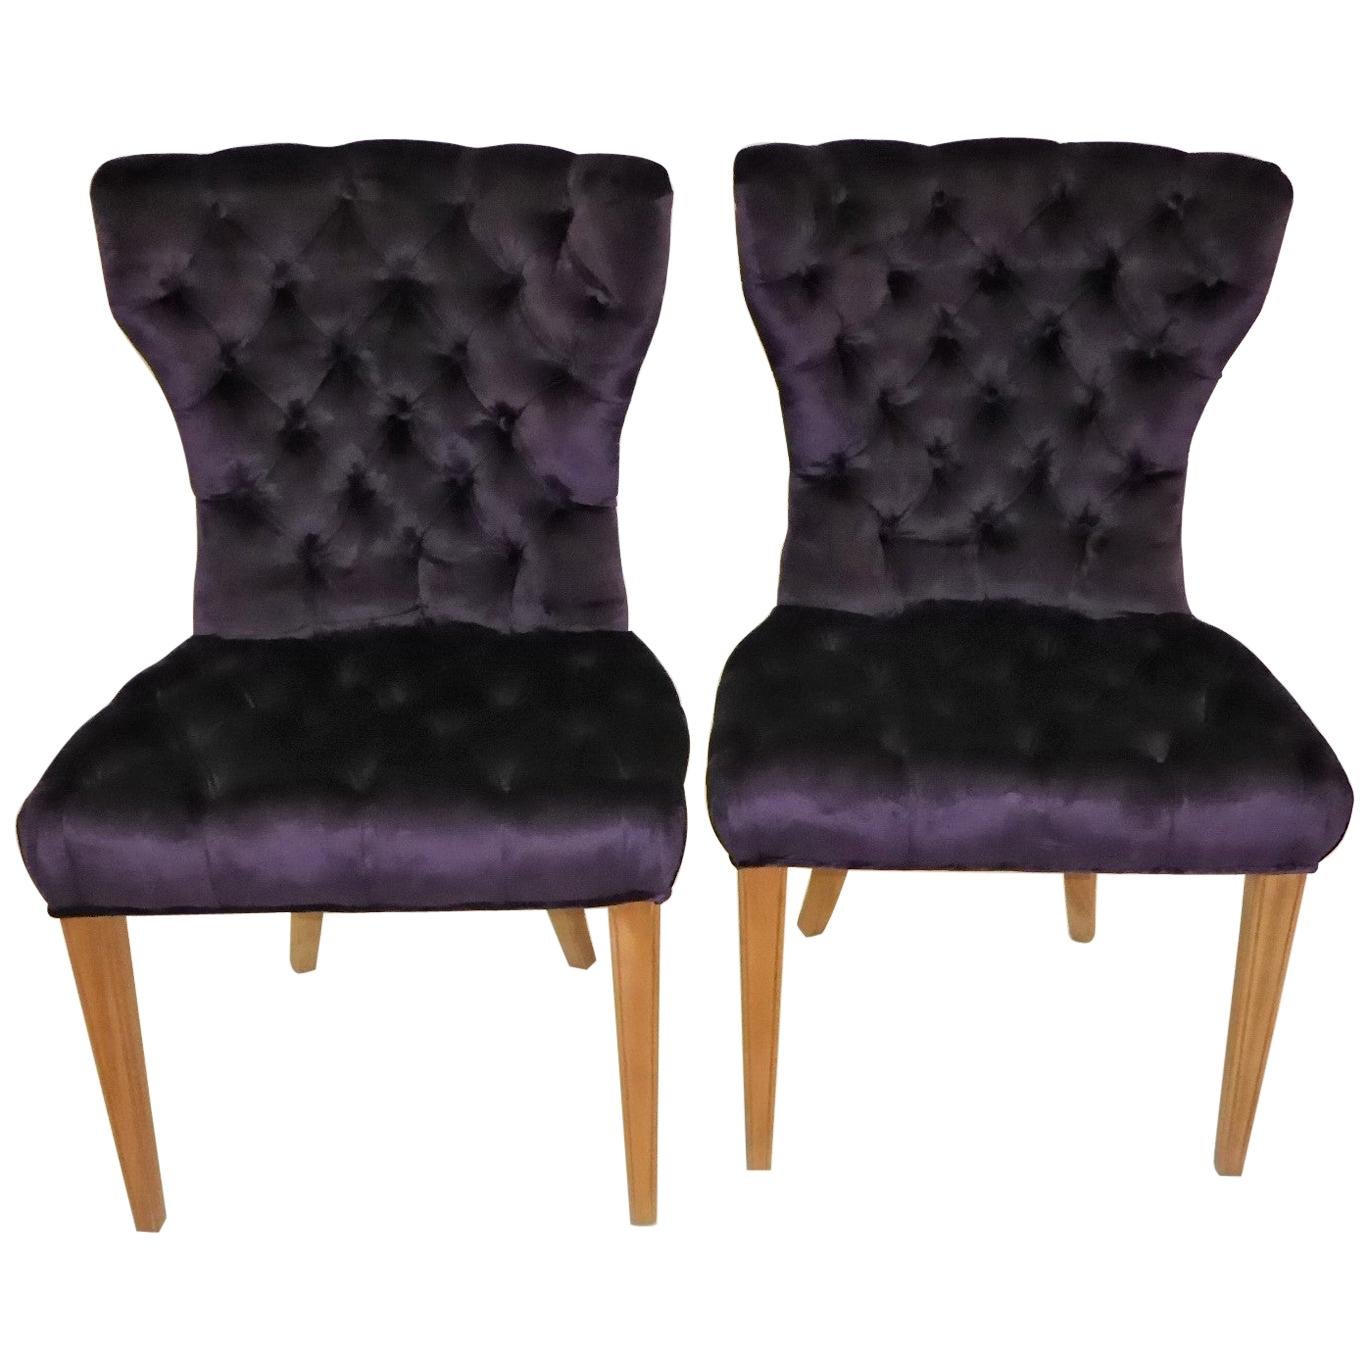 Pair 1930s Royal Purple Velvet Deep Tufted Slipper Chairs